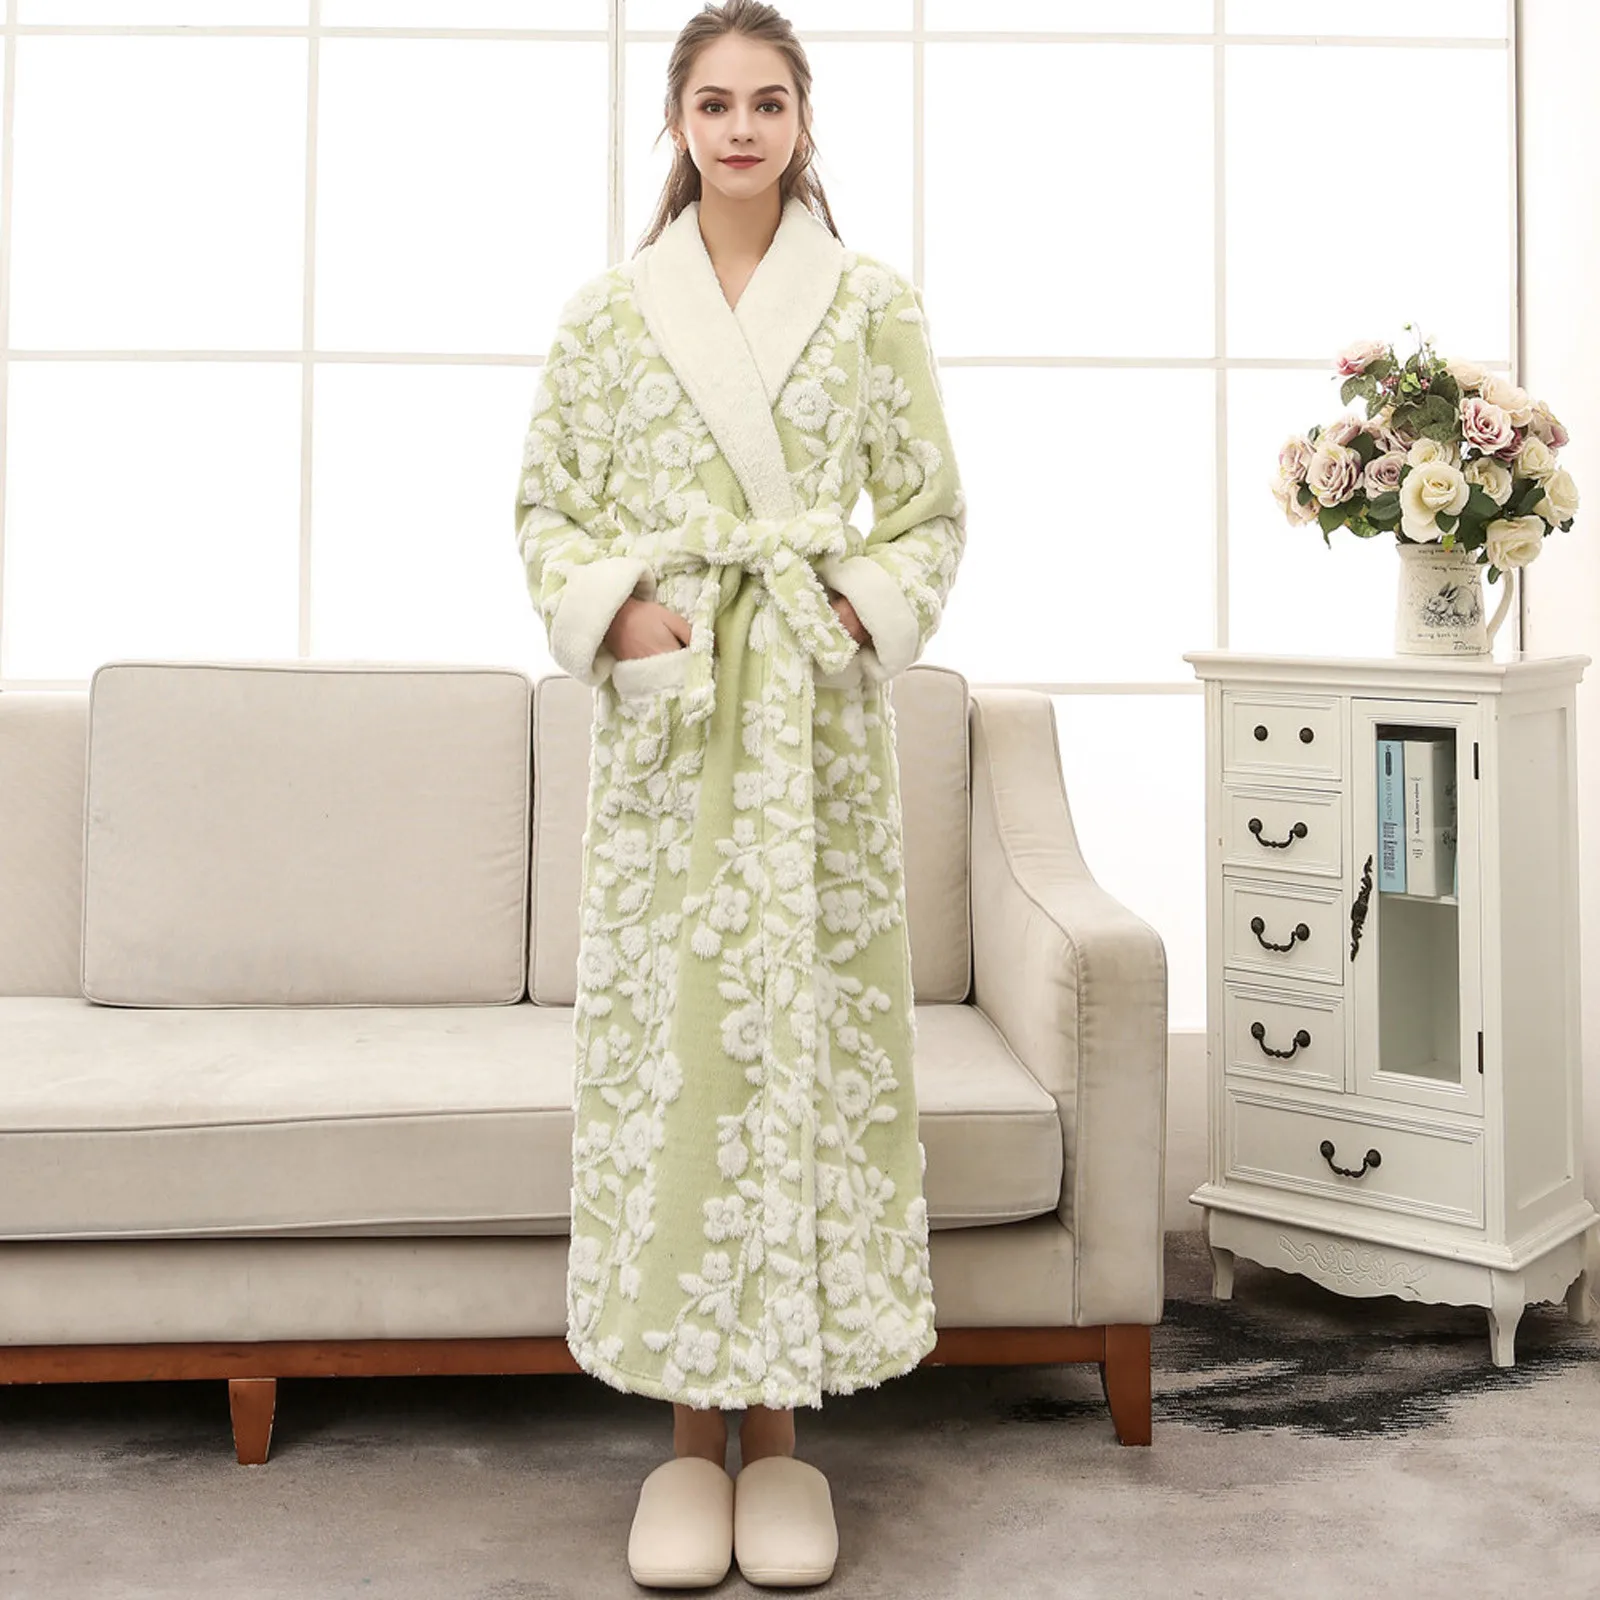 

Autumn Winter Vintage Exquisite Floral Jacquard Flannel Kimono Bathrobe Women's Thicken Warm PlushRobe Pajamas Sleepwear